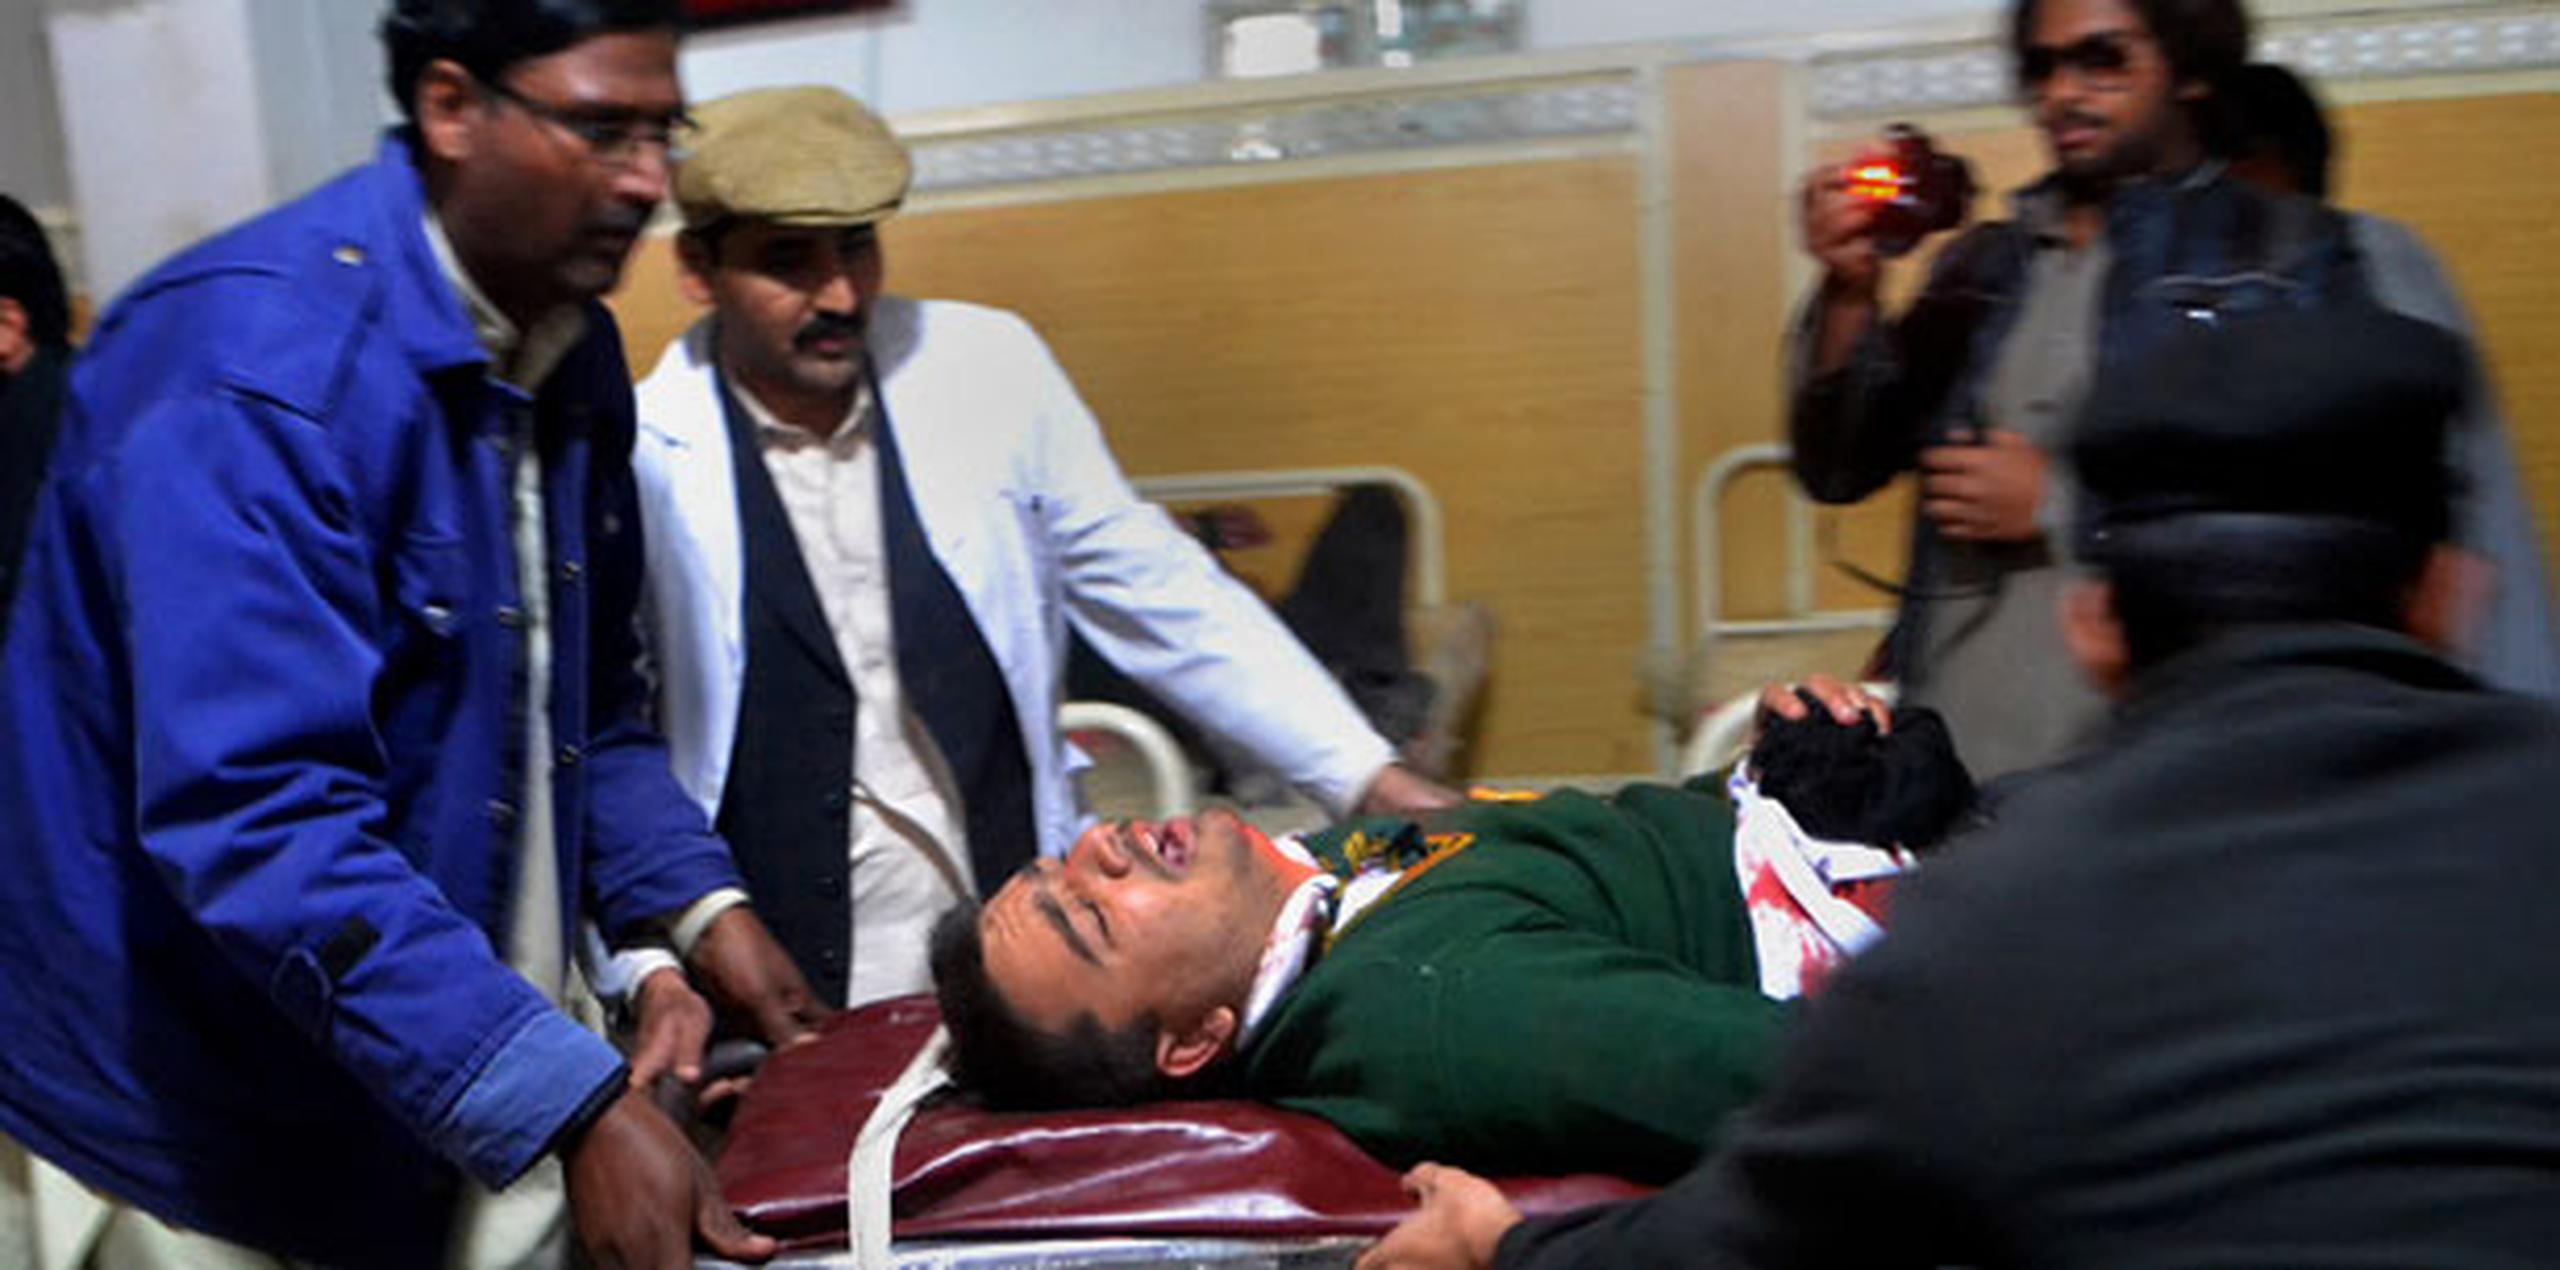 Uno de los estudiantes heridos mientras es transportado al hospital. (Prensa Asociada)